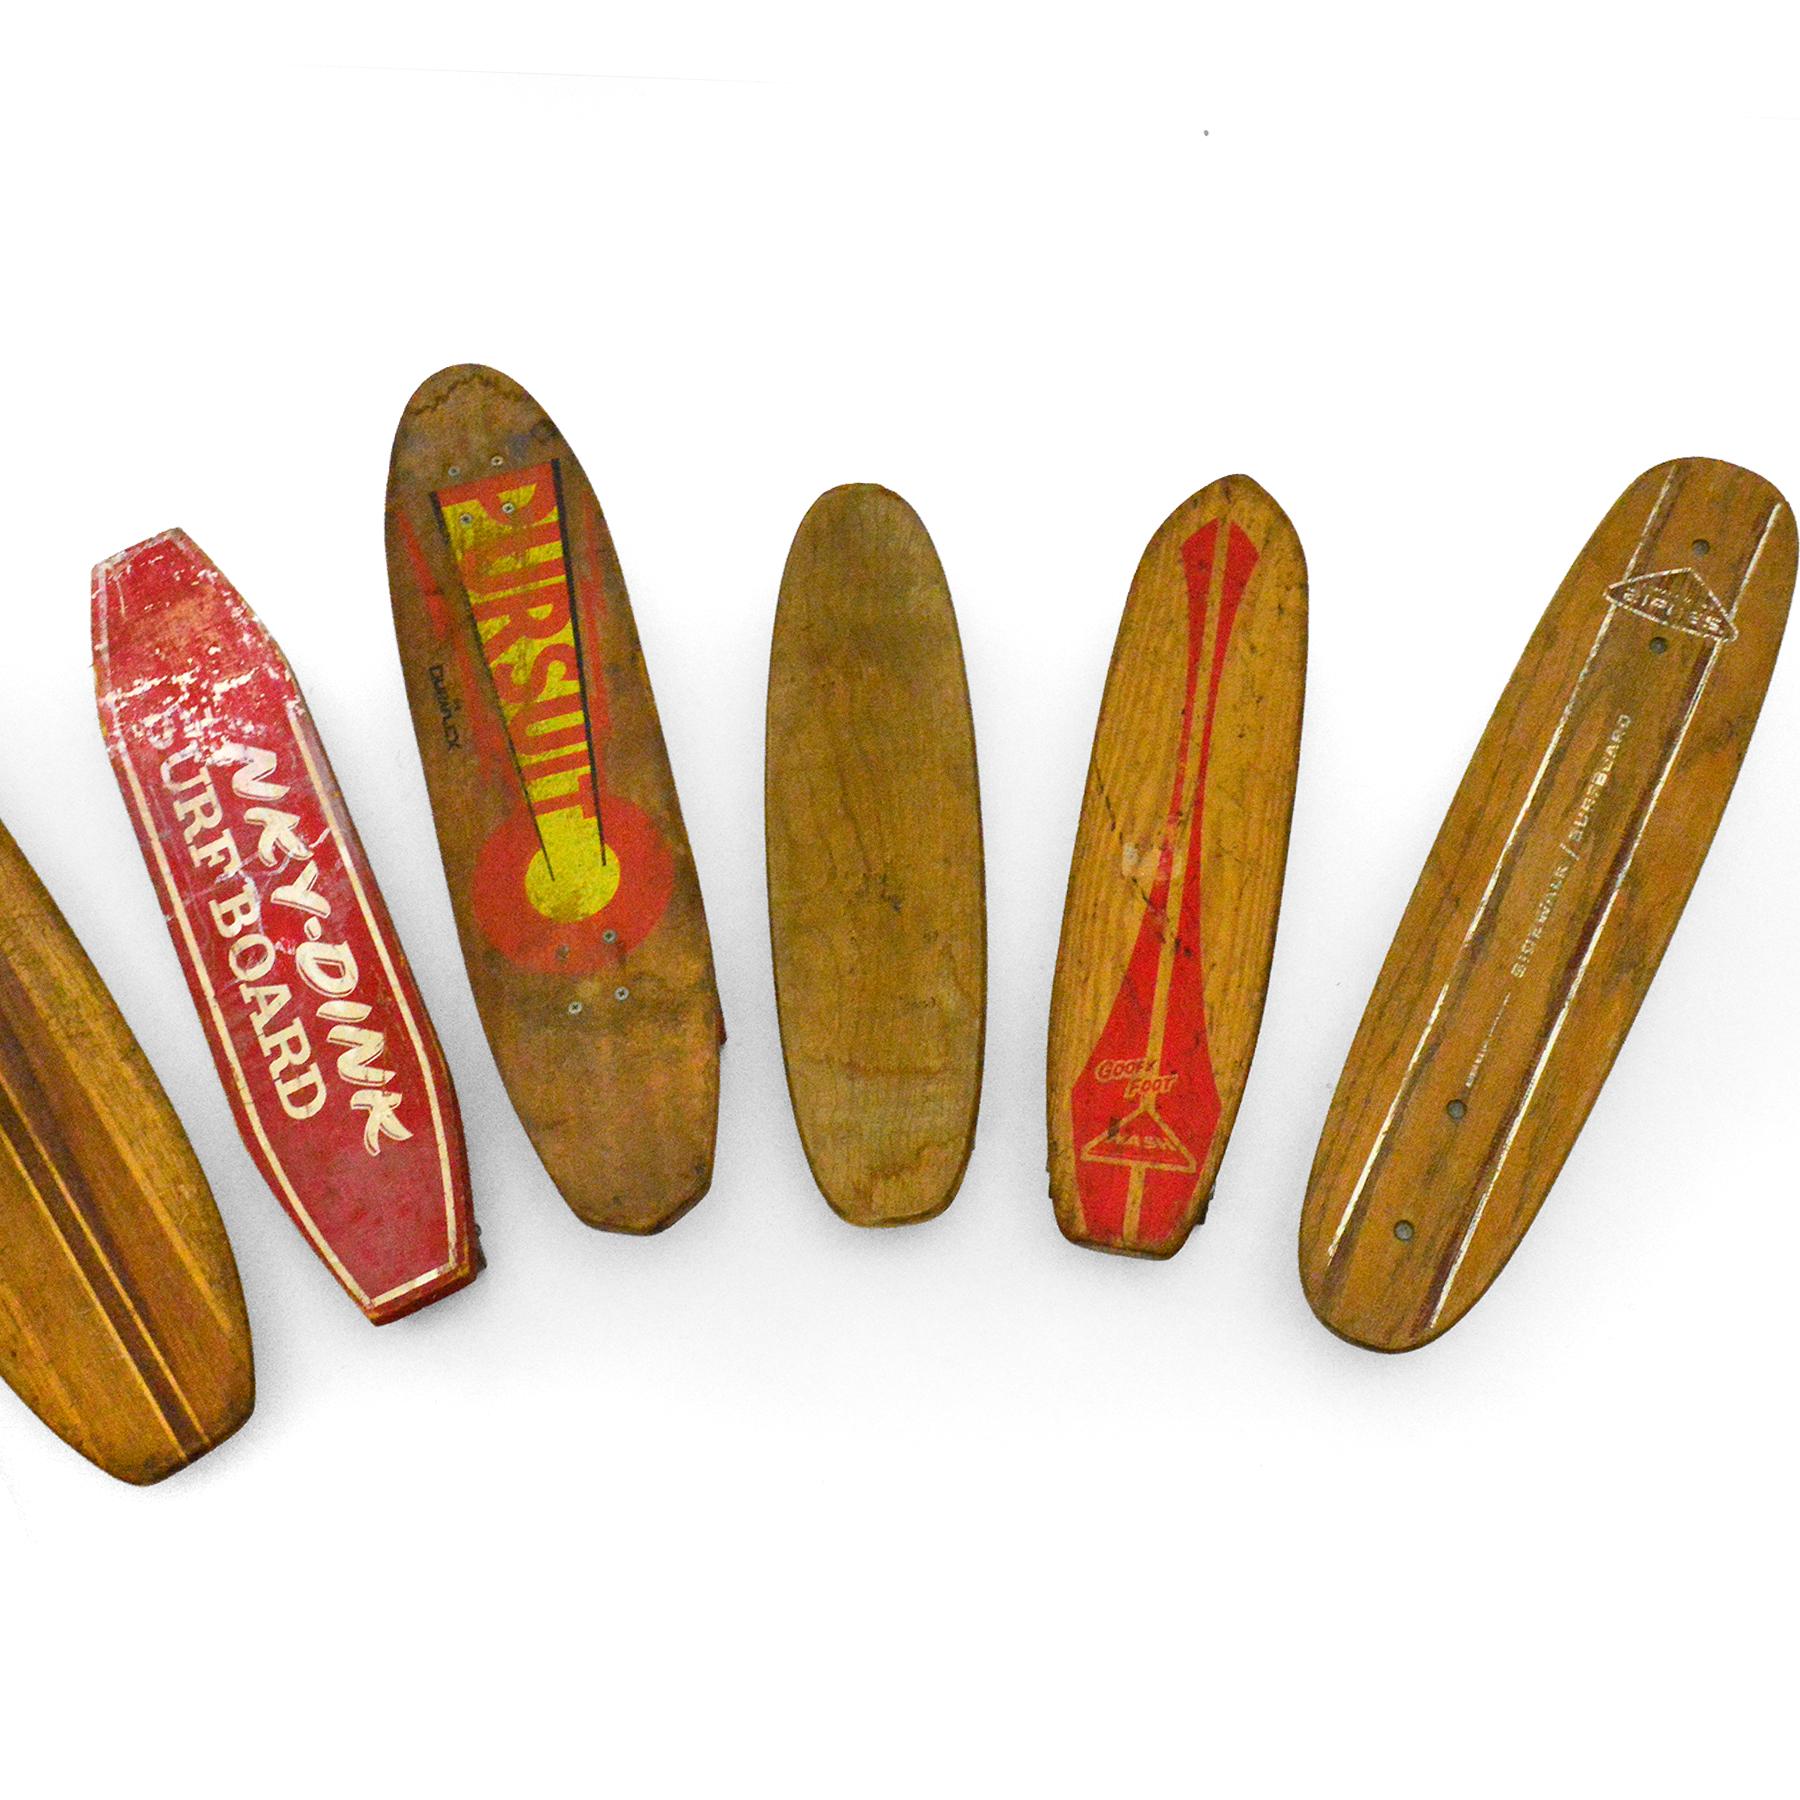 Steel Collection of Vintage Skateboards